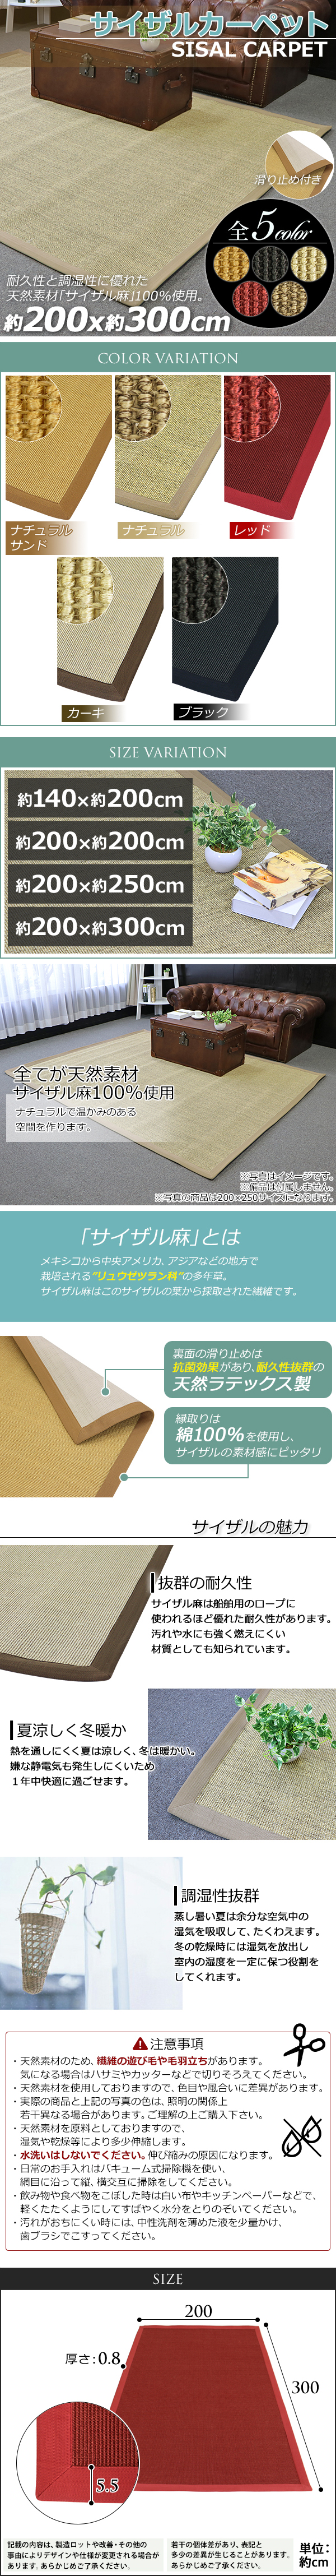 SALE送料無料送料無料 サイザル カーペット 5カラー選択 200×300cm 約3.5畳 3.5畳 ラグ 絨毯 敷物 マット じゅうたん 麻 100%天然素材 自然素材 カーペット一般